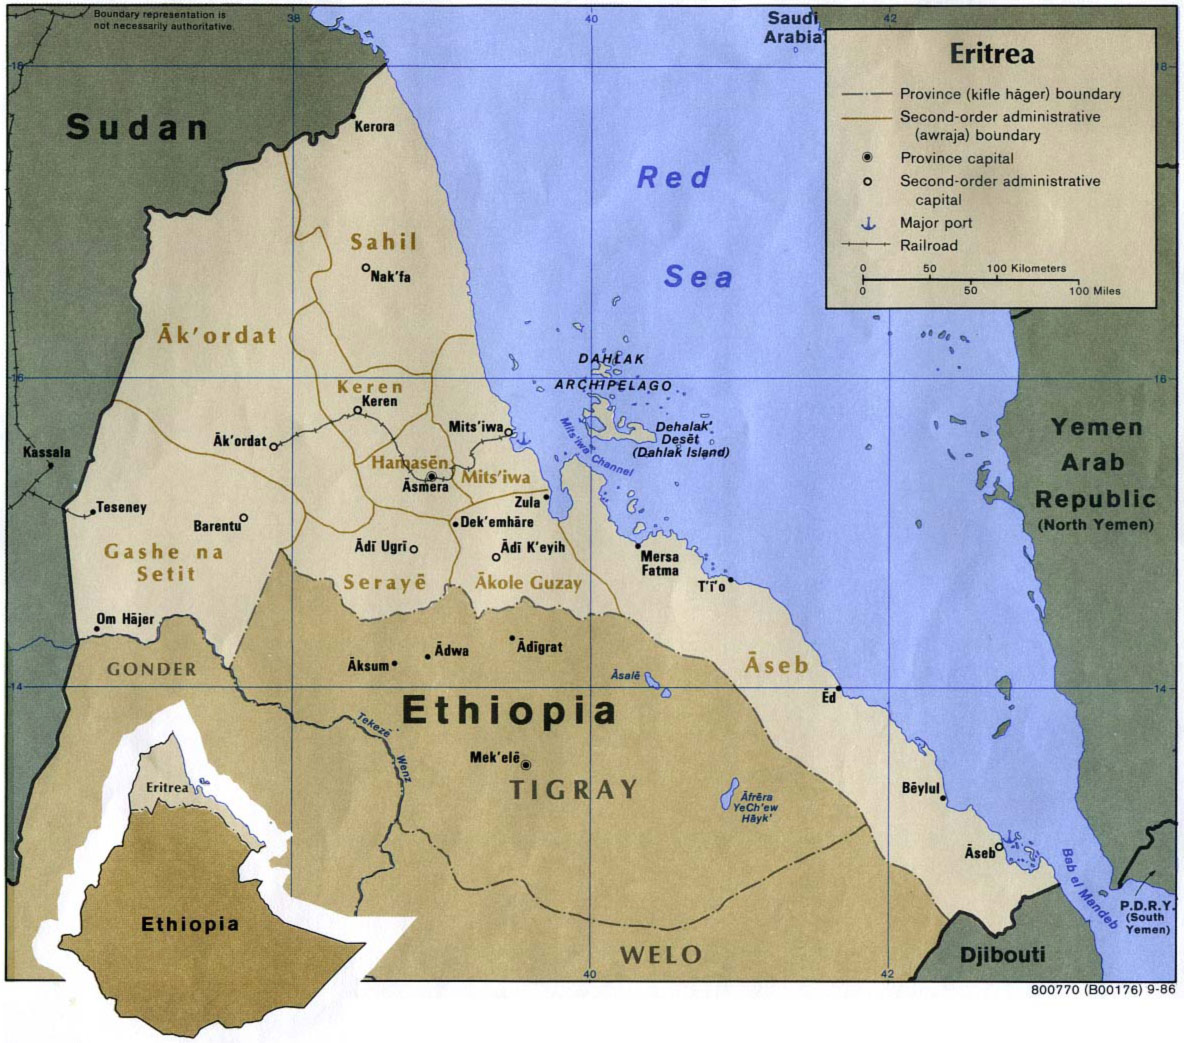 Eritrea_harita_siyasi.jpg